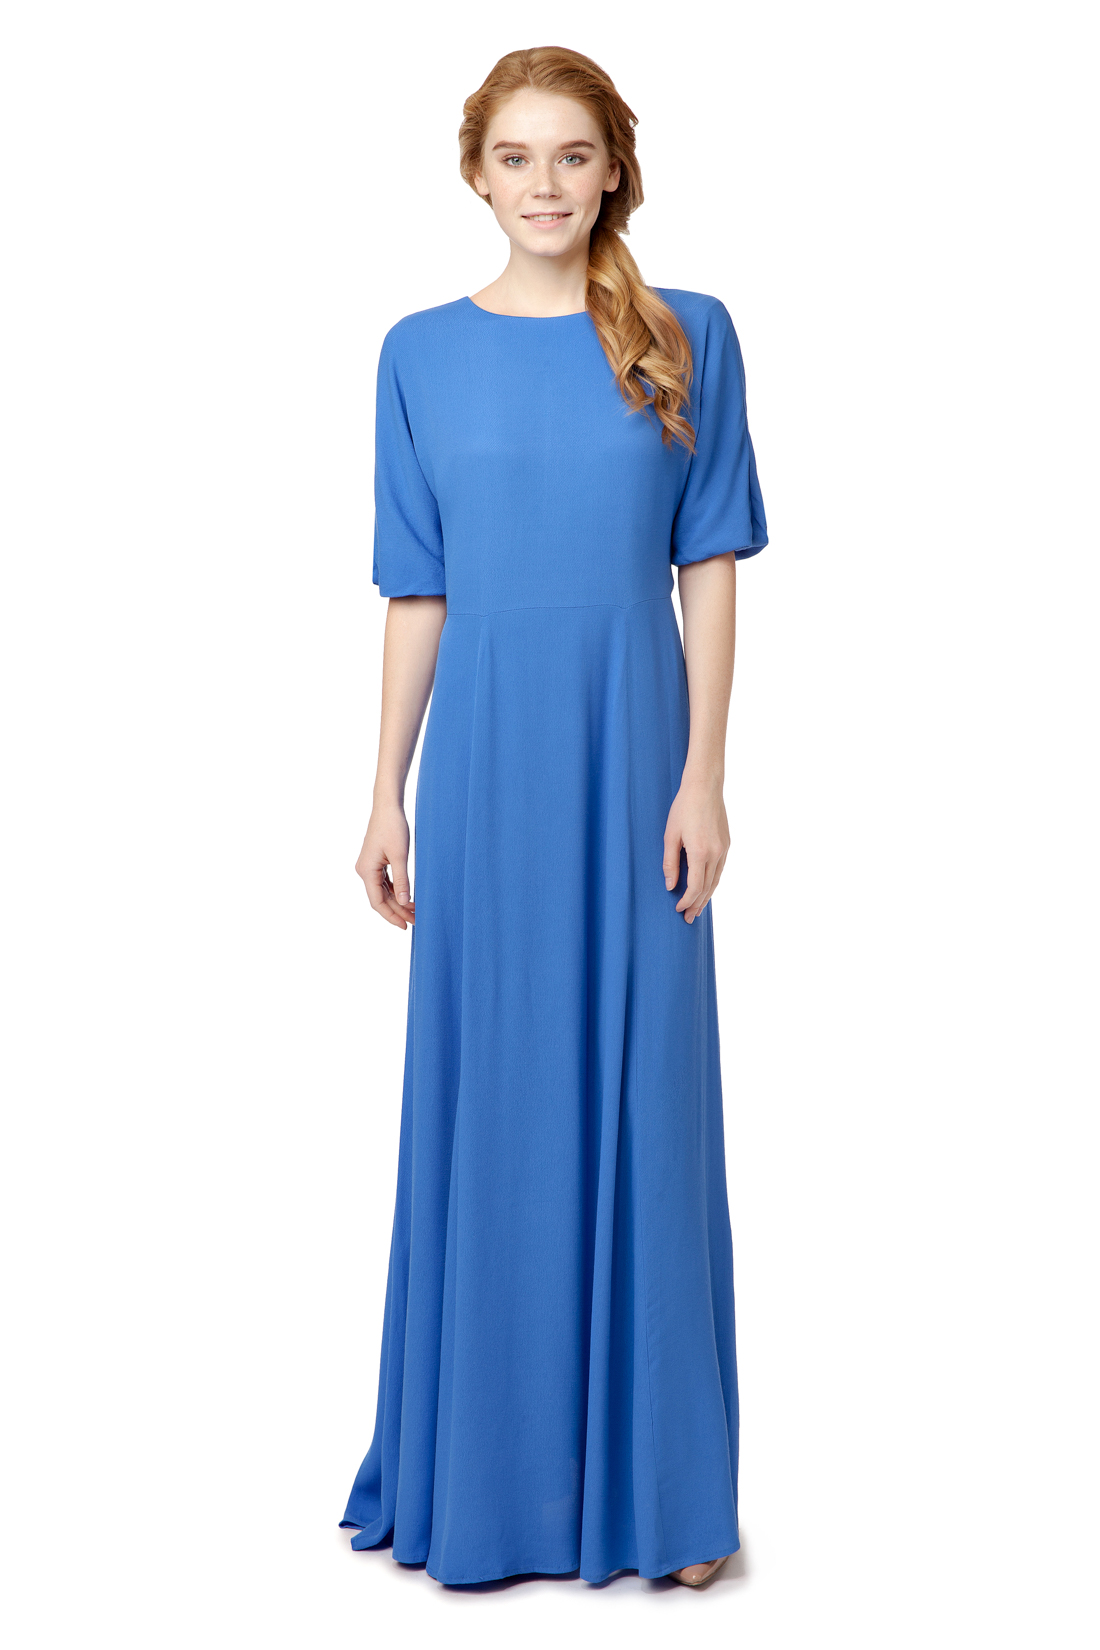 Платье с вырезом на спине (арт. baon B457025), размер S, цвет синий Платье с вырезом на спине (арт. baon B457025) - фото 5